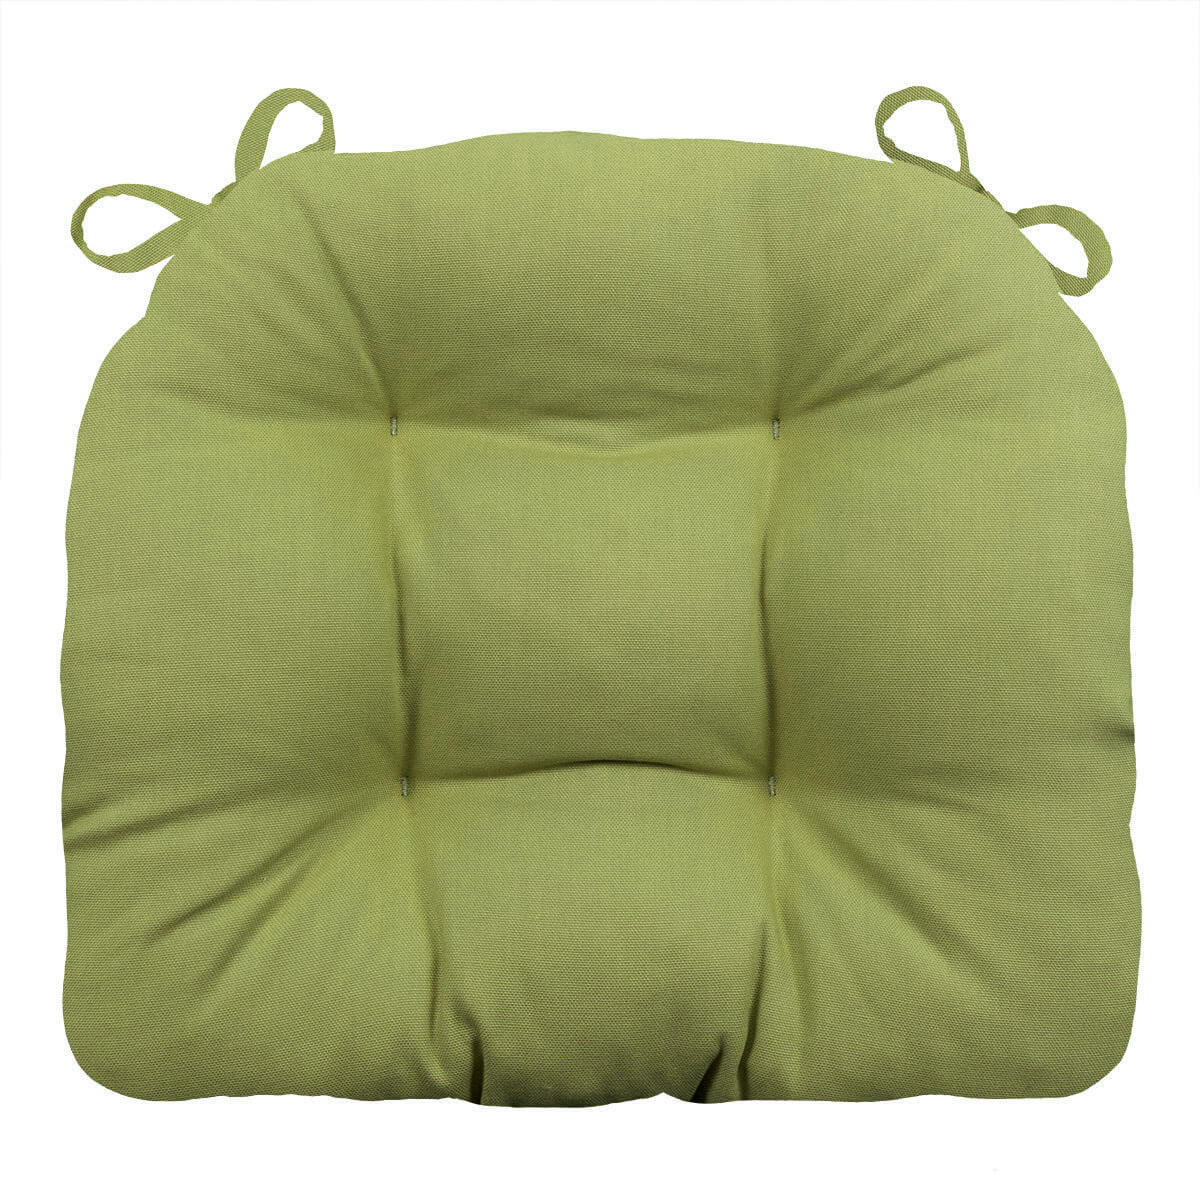 2 Thick Chair Cushion Pad